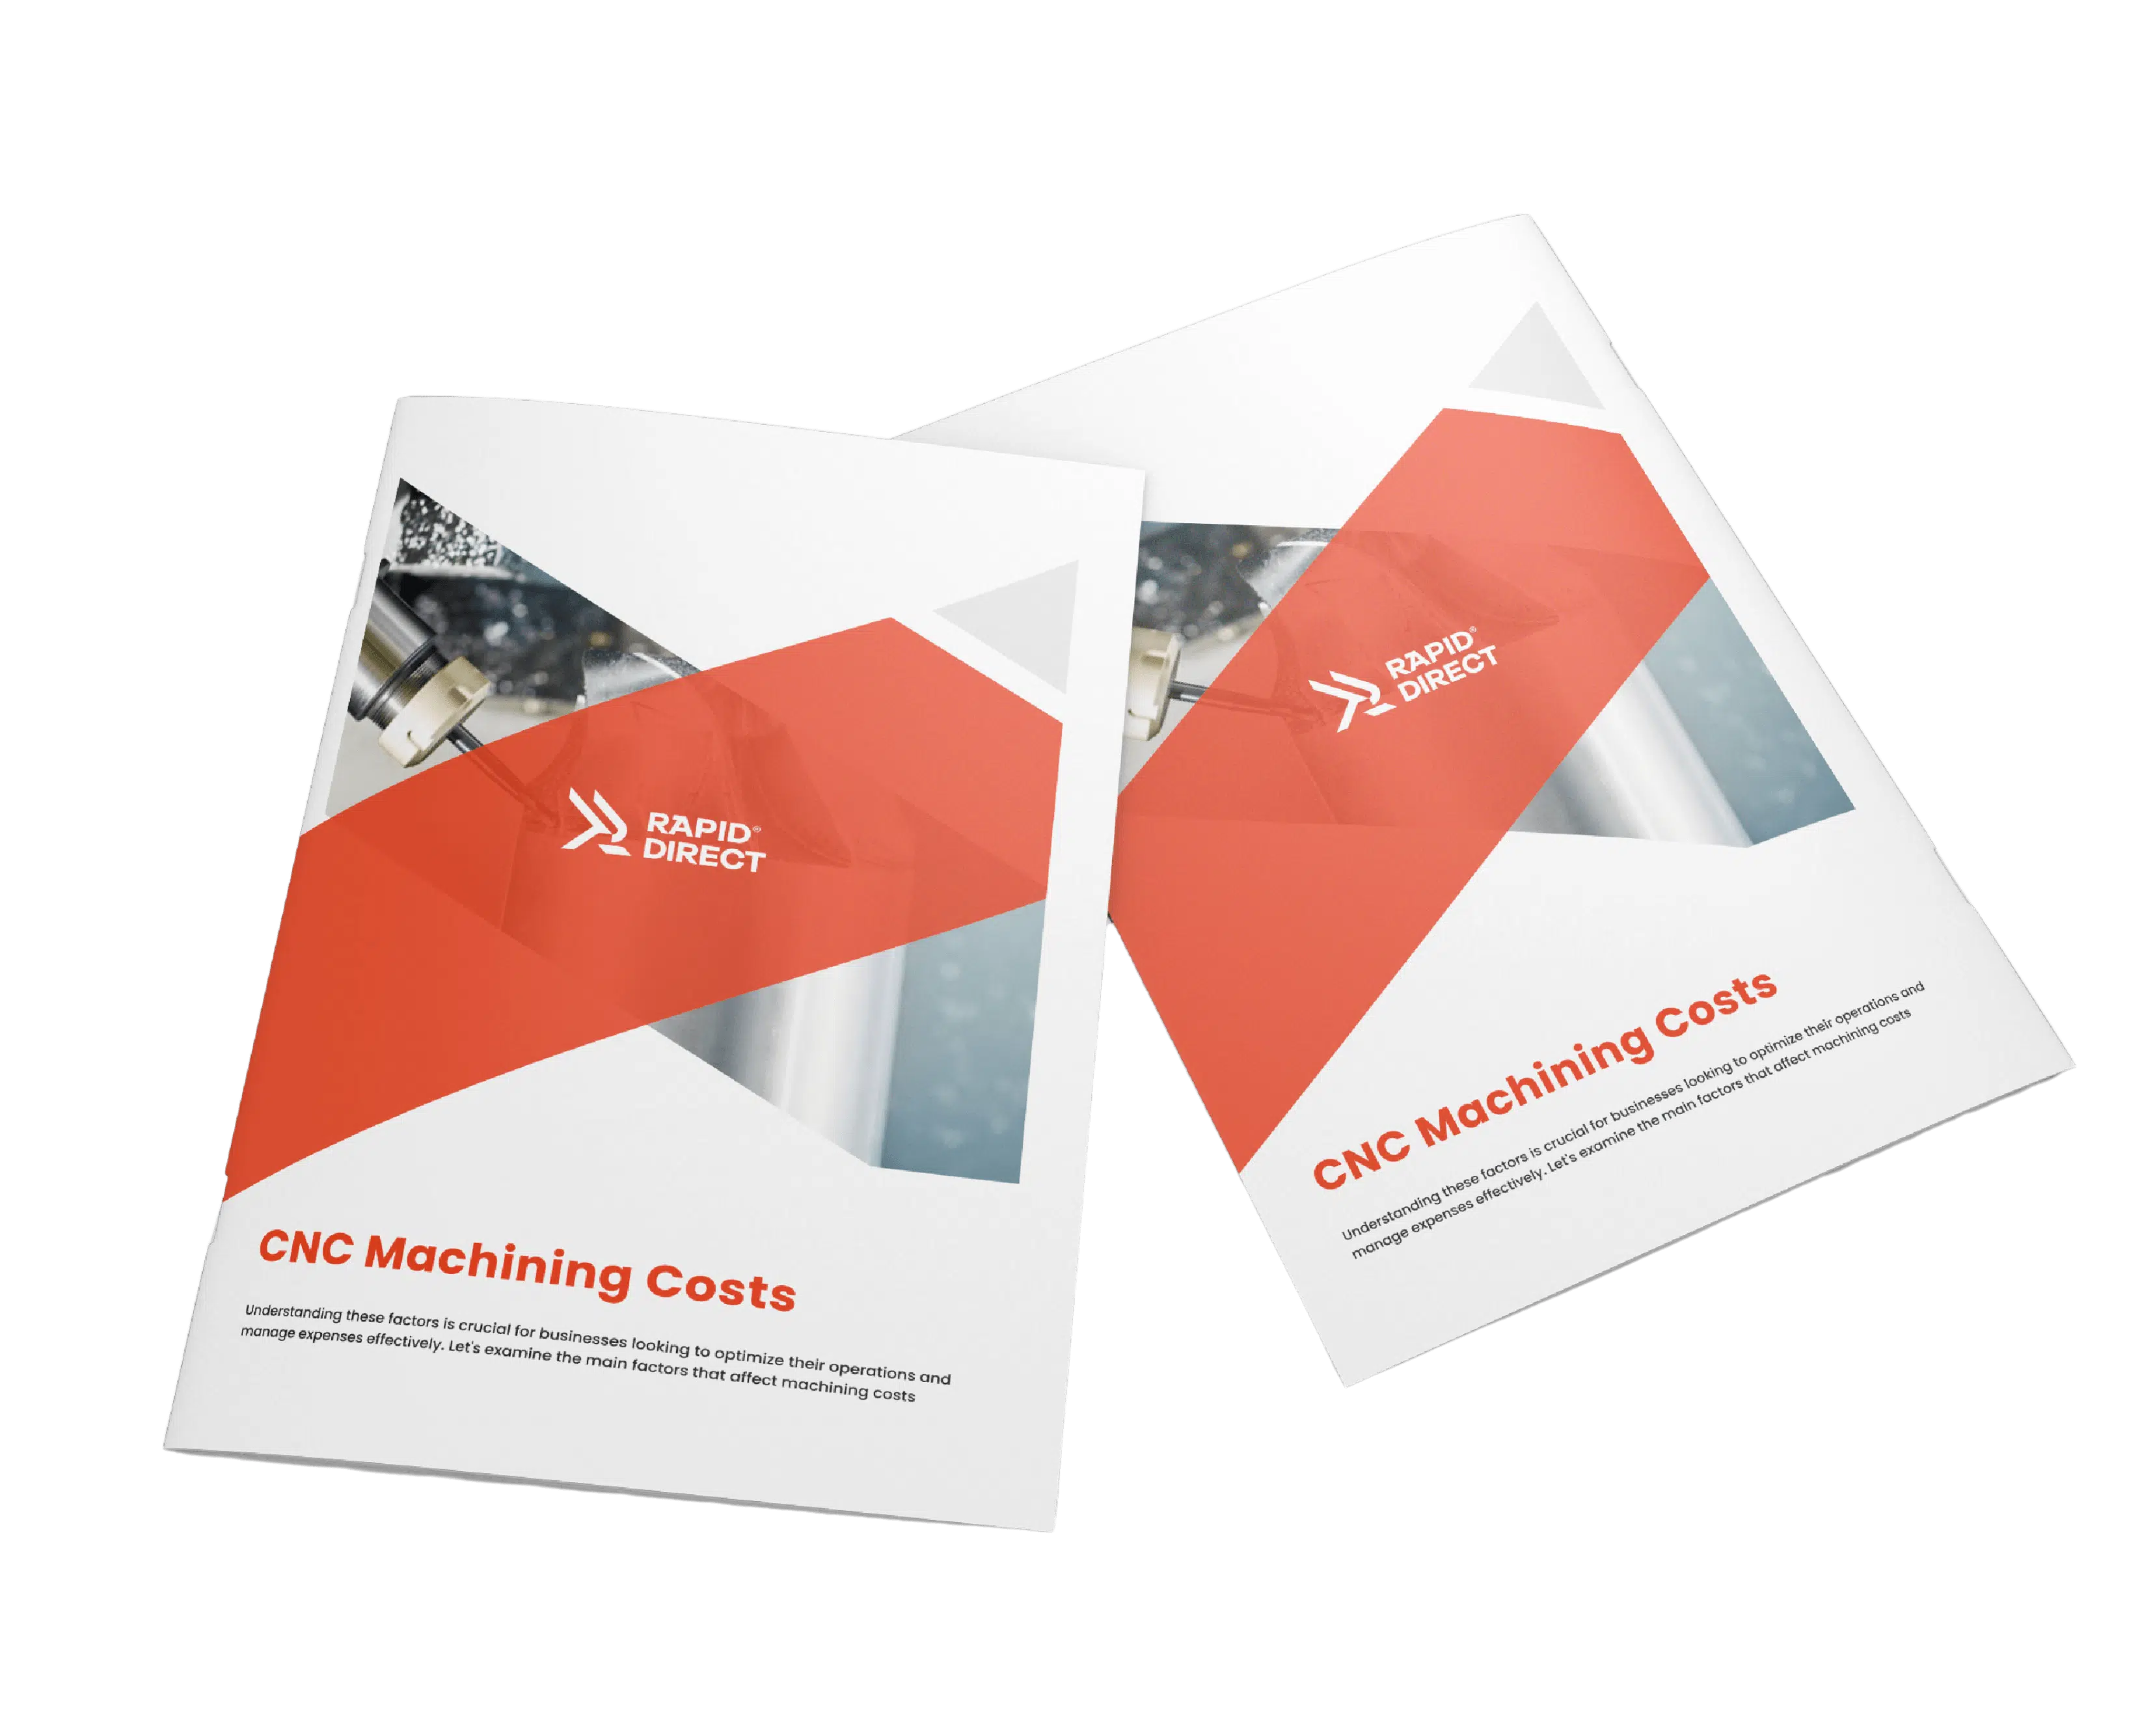 cnc machining cost ebook cover